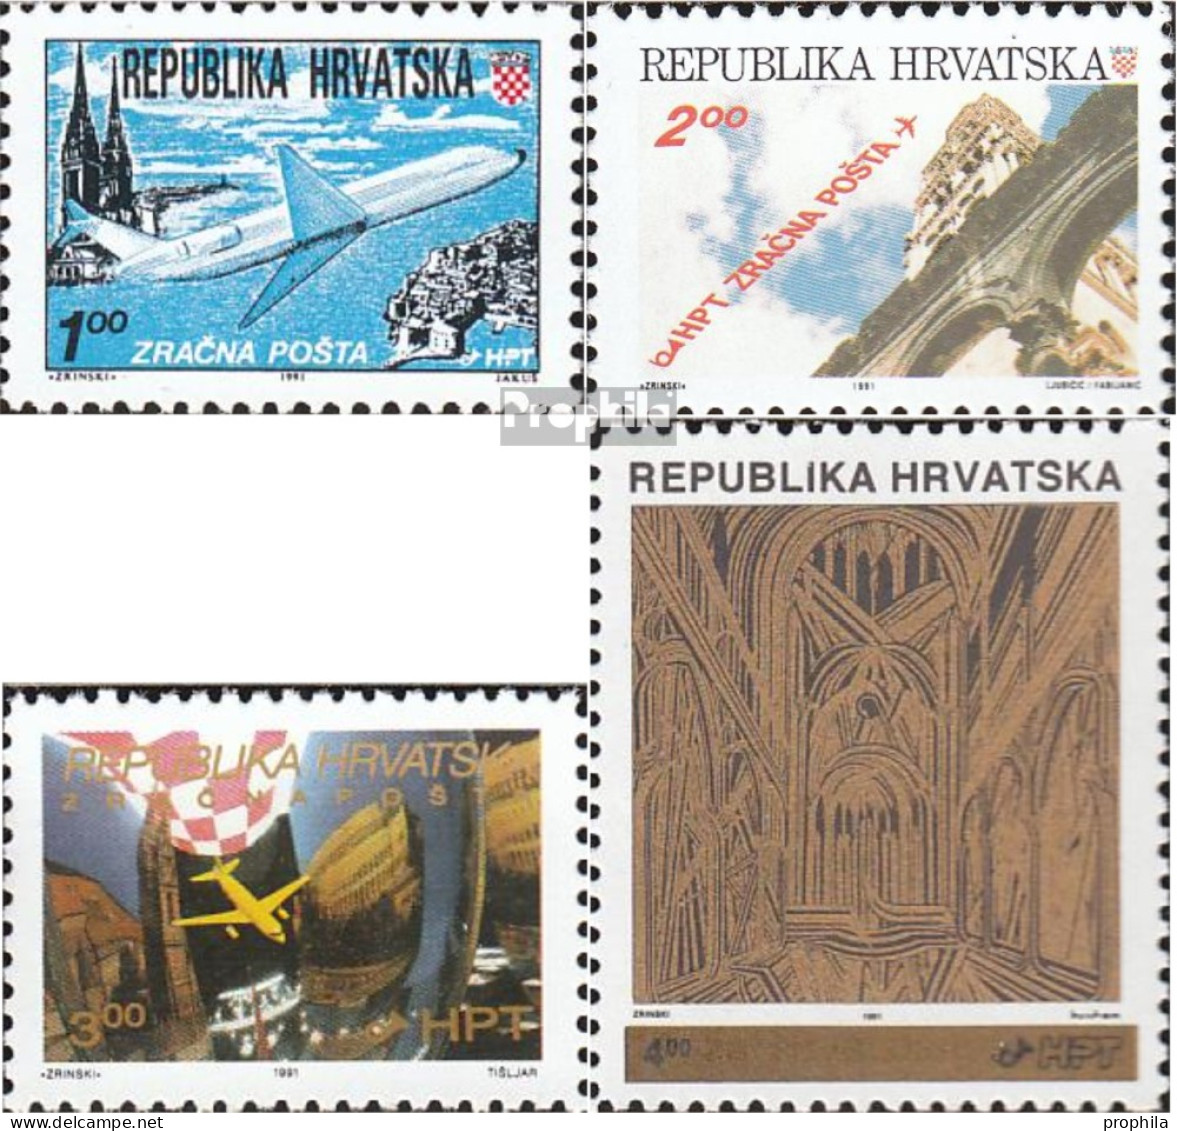 Kroatien 179A,180A A,181,182A (kompl.Ausg.) Postfrisch 1991 Flugpost, Aufdruckausgabe - Croacia